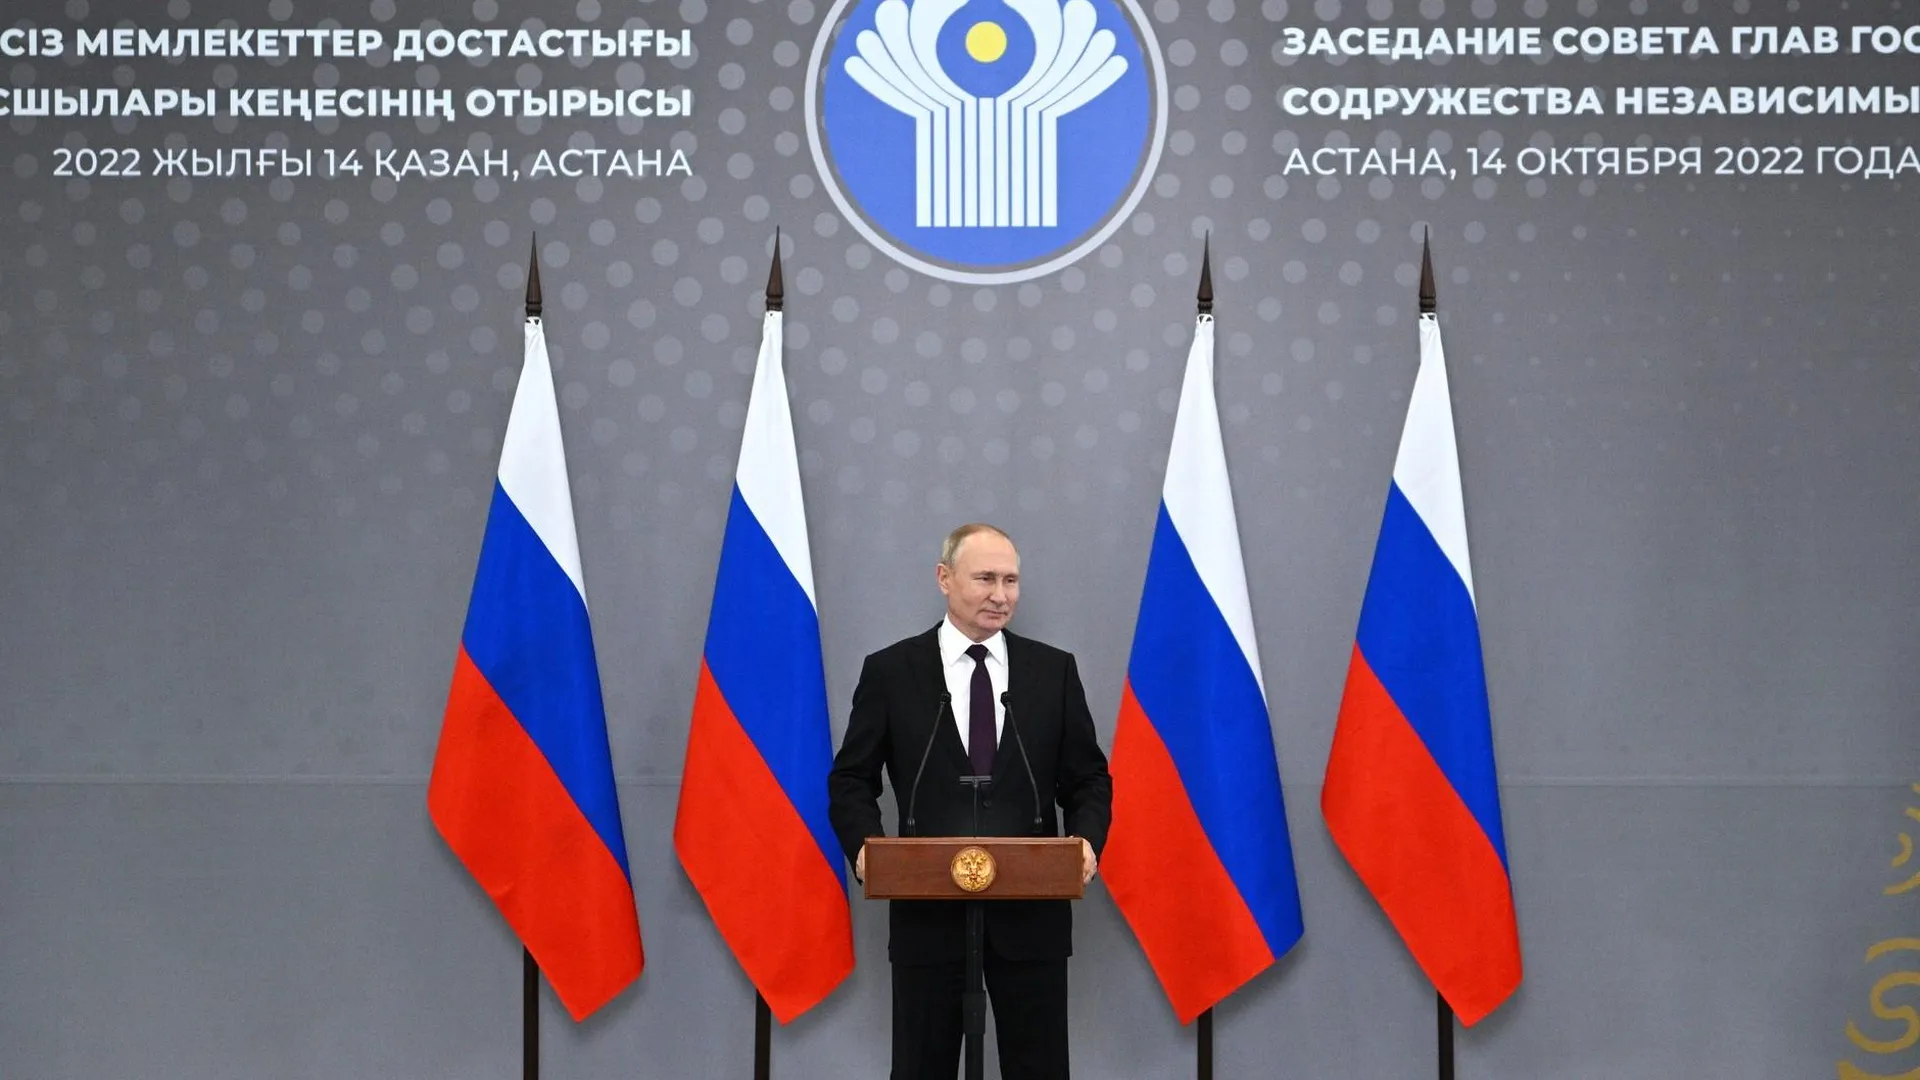 Партнерство со странами СНГ, завершение мобилизации, цели СВО – заявления Путина в Астане